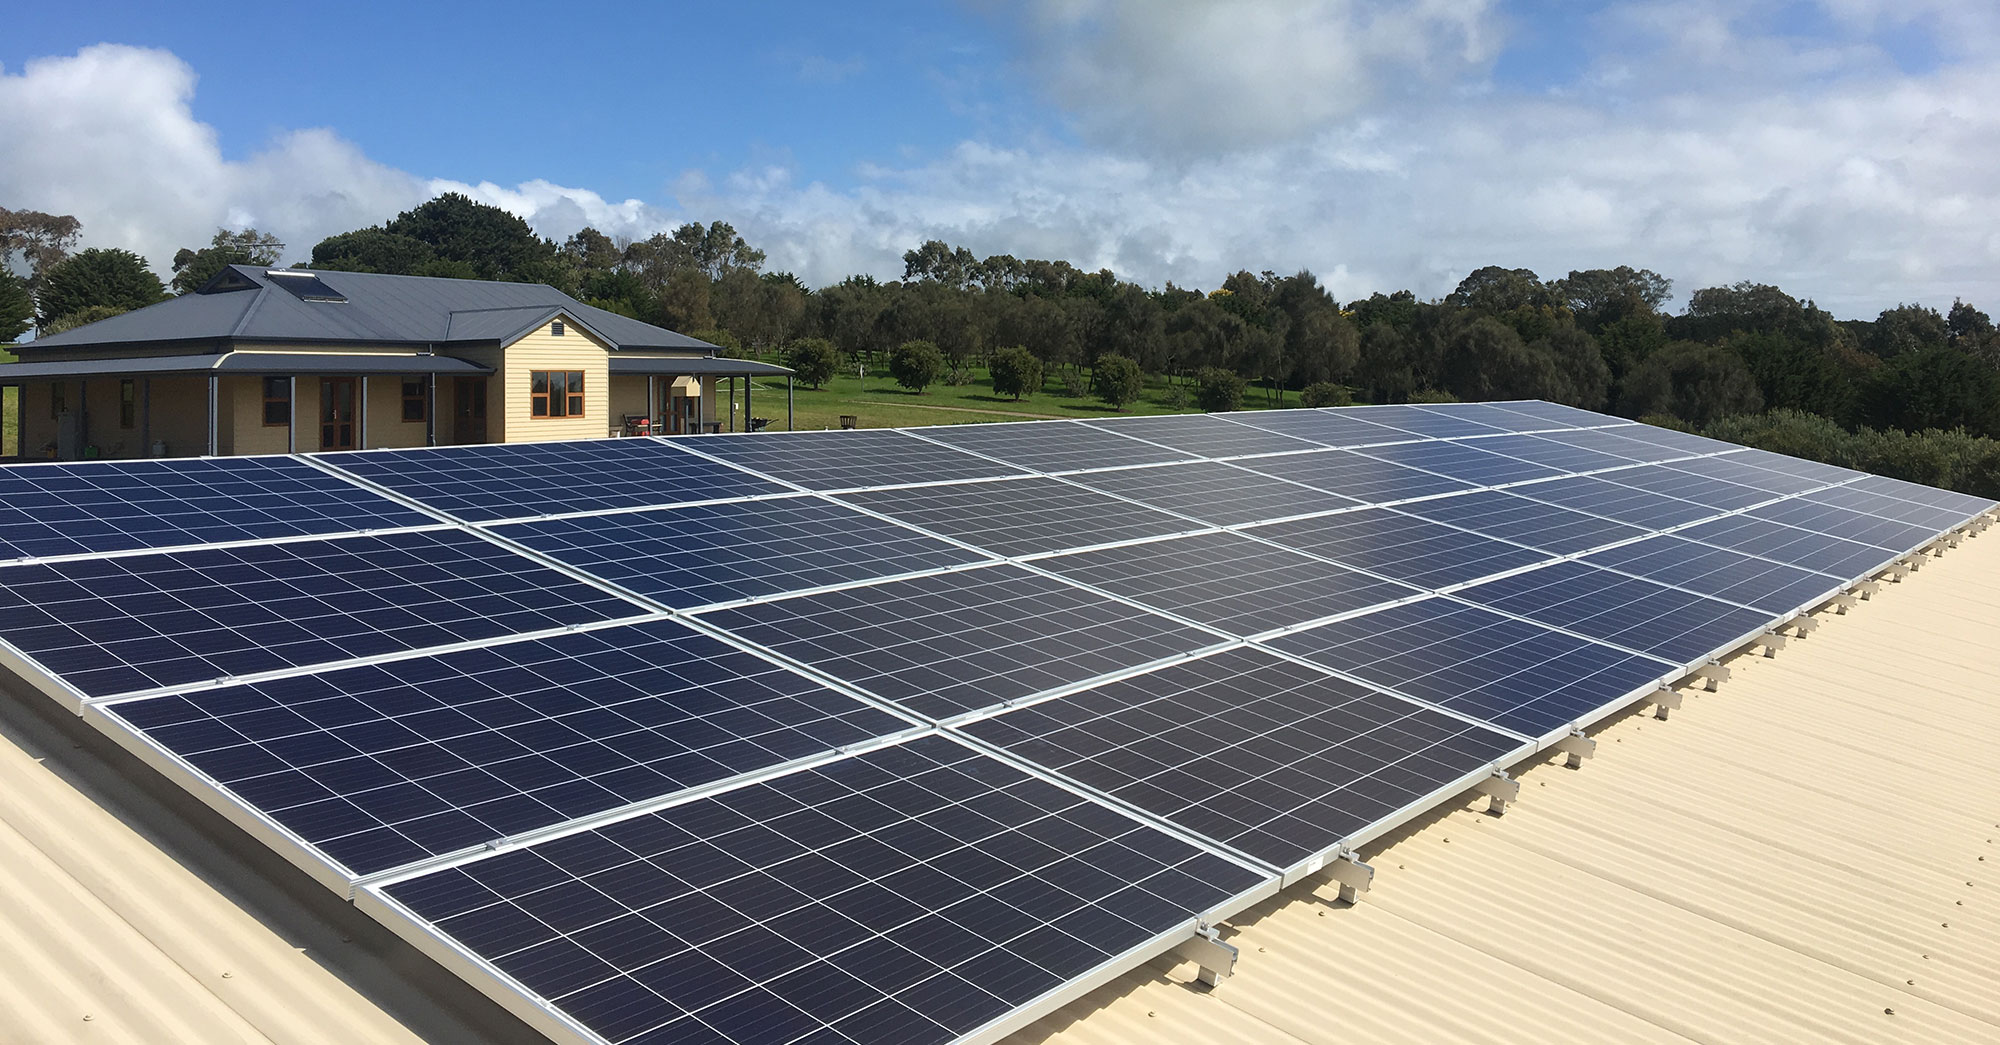 Adelaide Solar